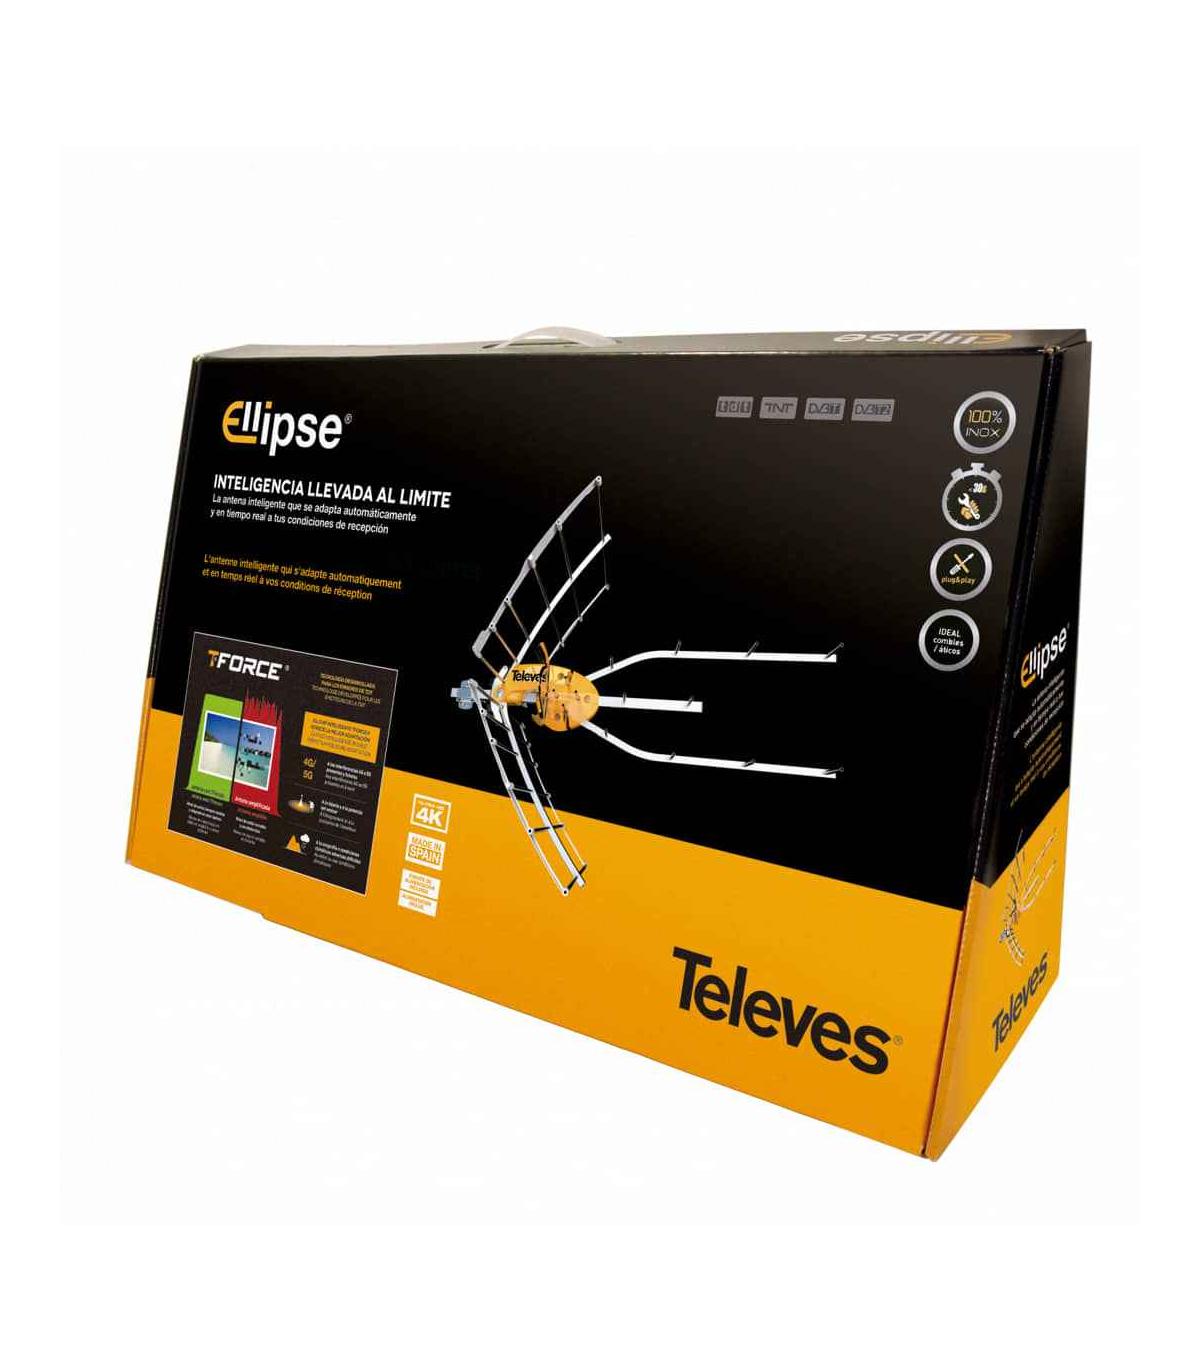 Comprar ANTENA TV TELEVES 148920 ELLIPSE 5G SIN F.ALIMENT. Online